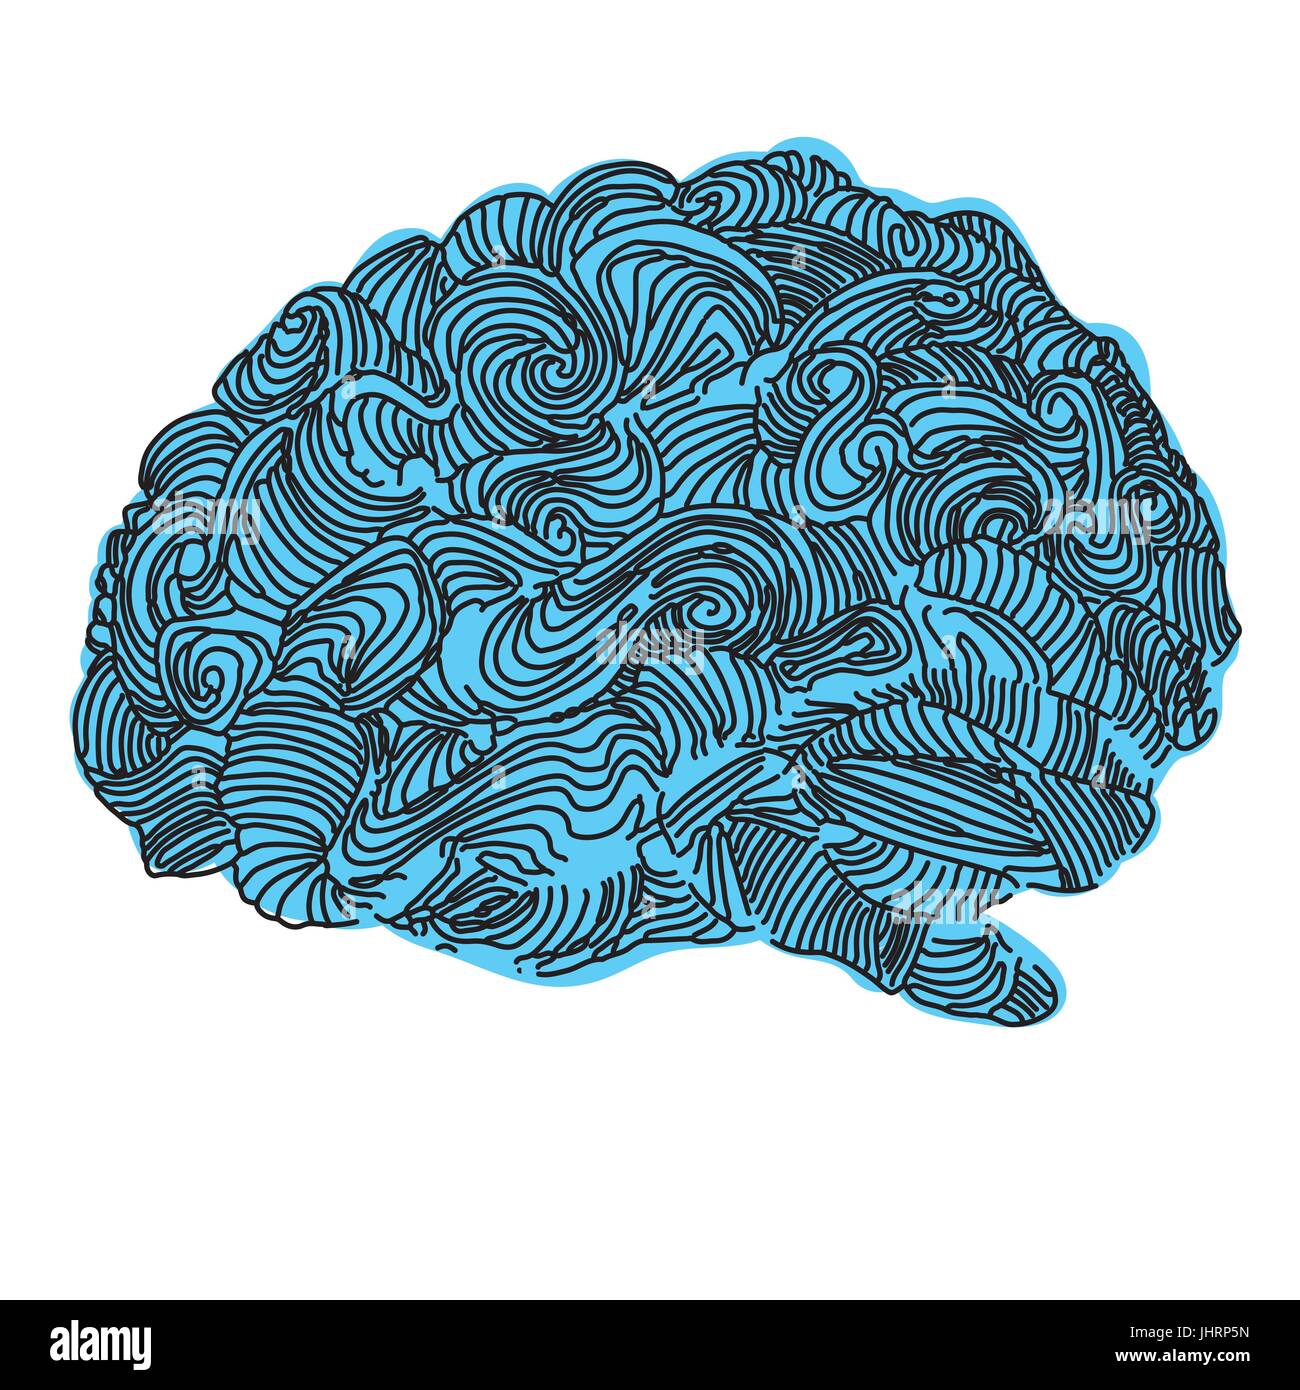 Cerveau idée illustration. Vecteur Doodle concept a propos de cerveau humain. Illustration créative Illustration de Vecteur